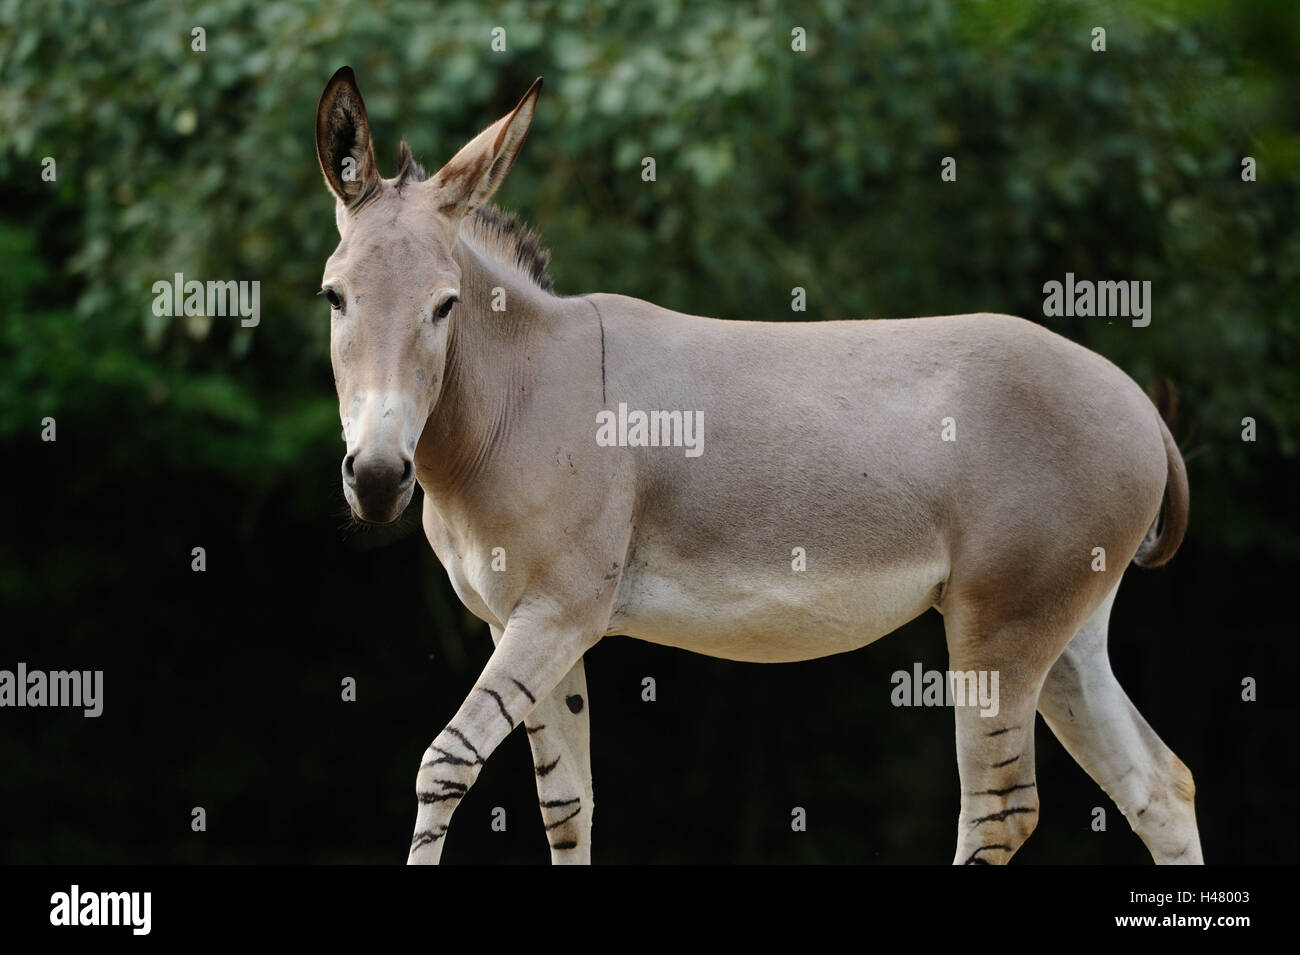 Somali donkey hi-res stock photography and images - Alamy